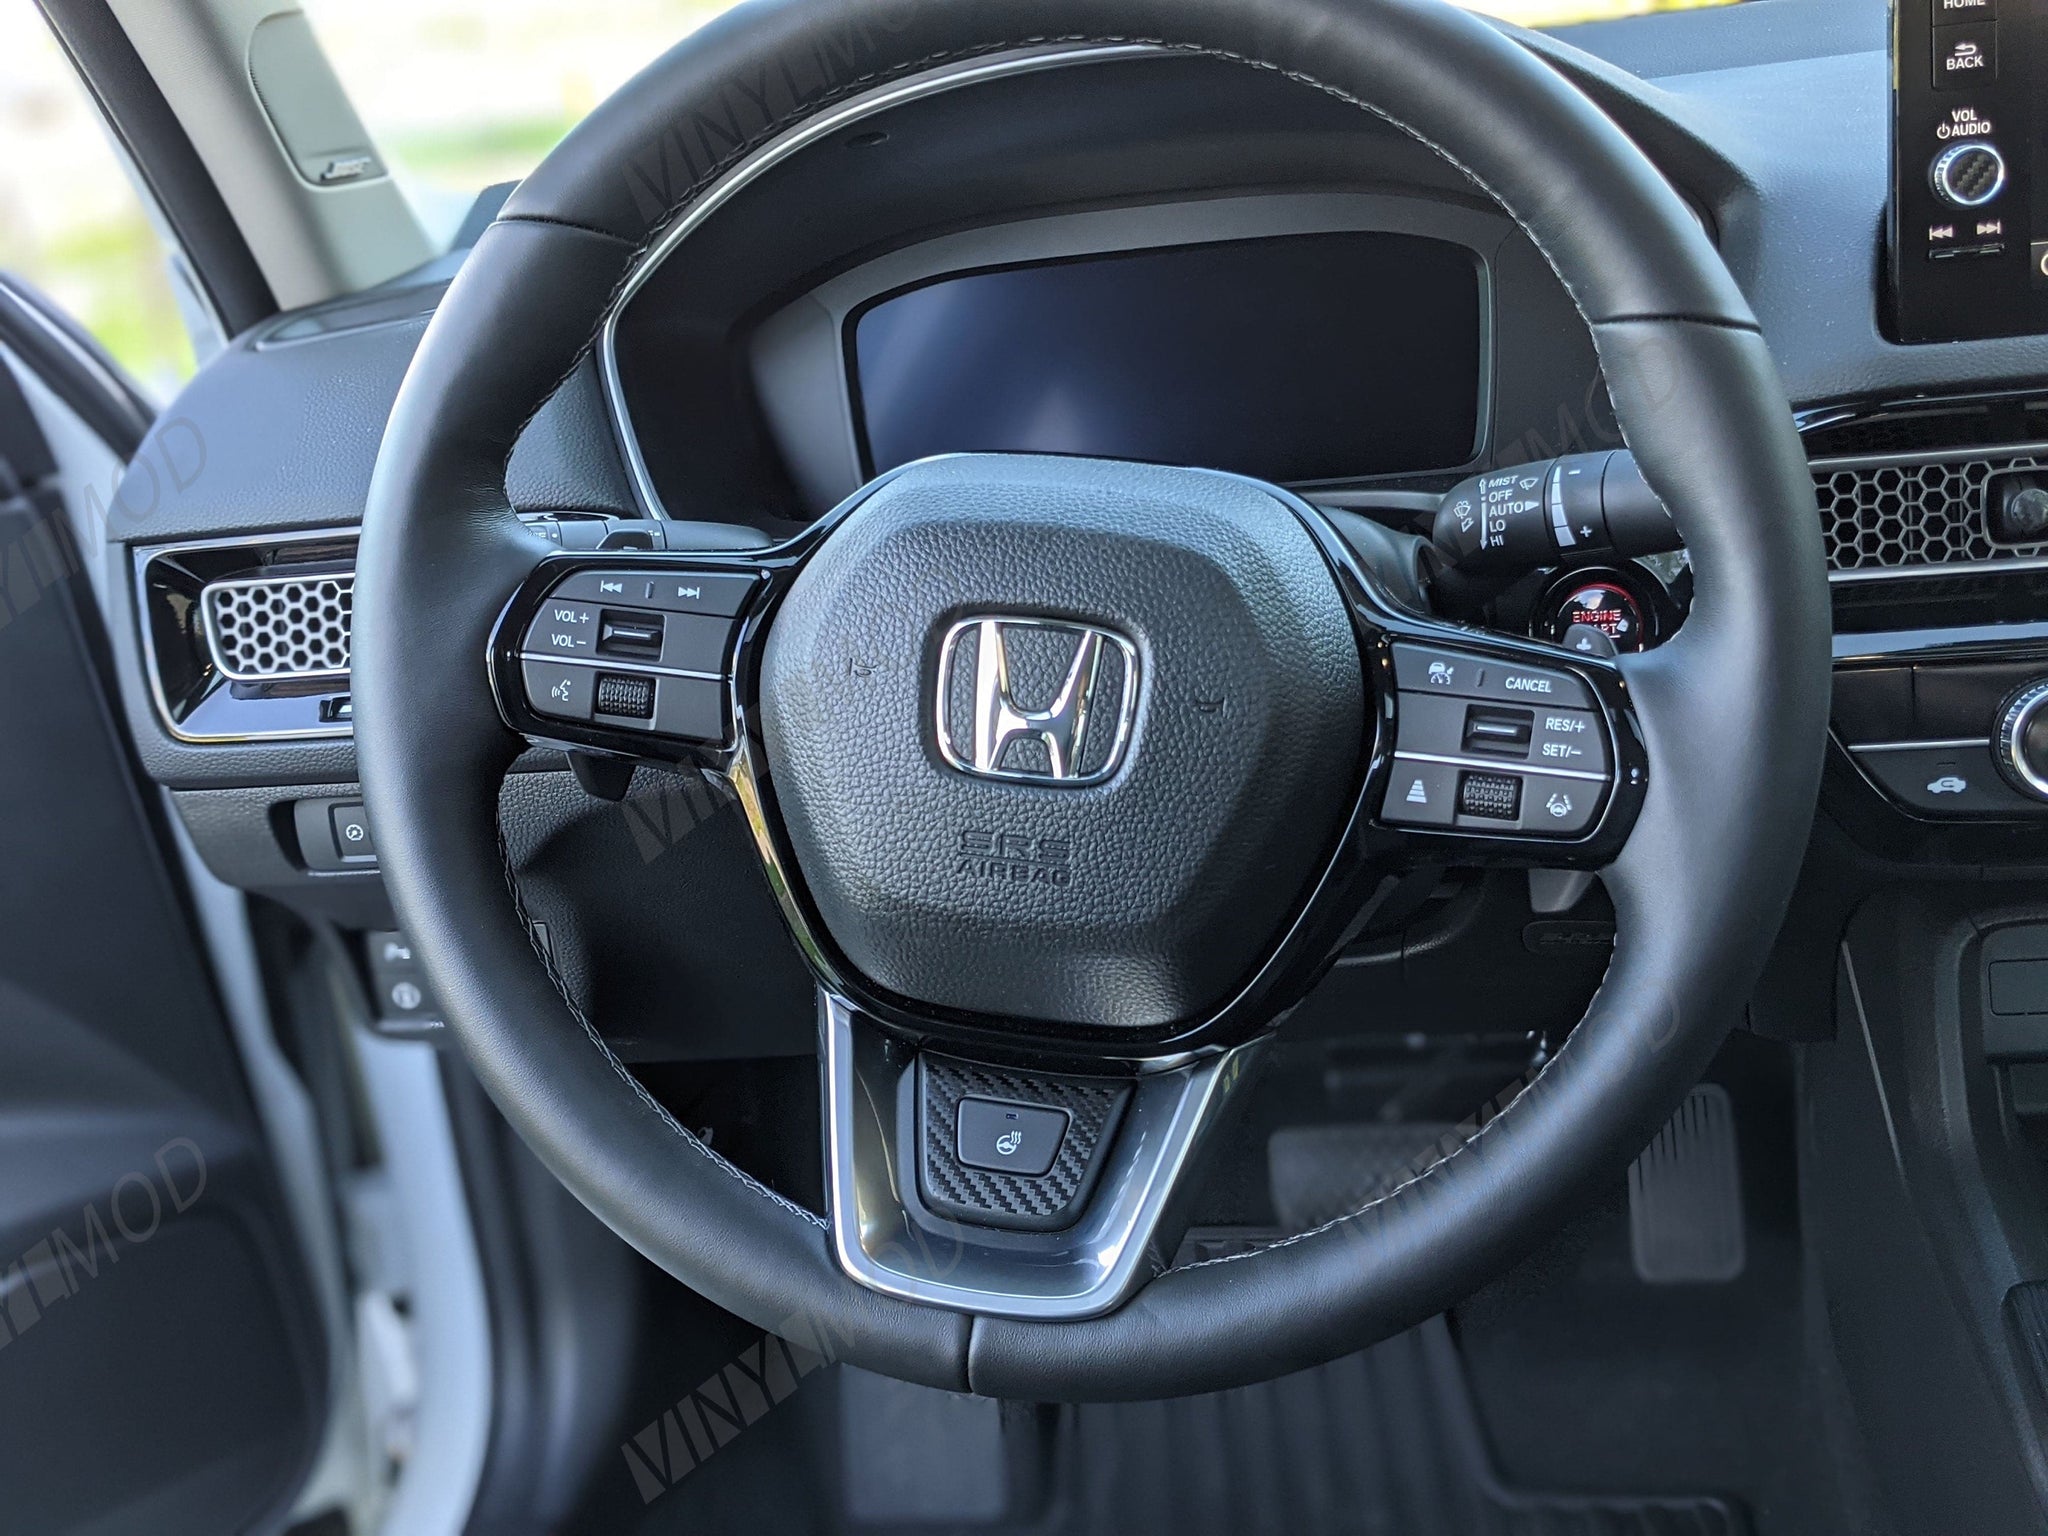 2021 (11ª generación) Honda Civic - Interior Volante inferior VinylMod Overlay